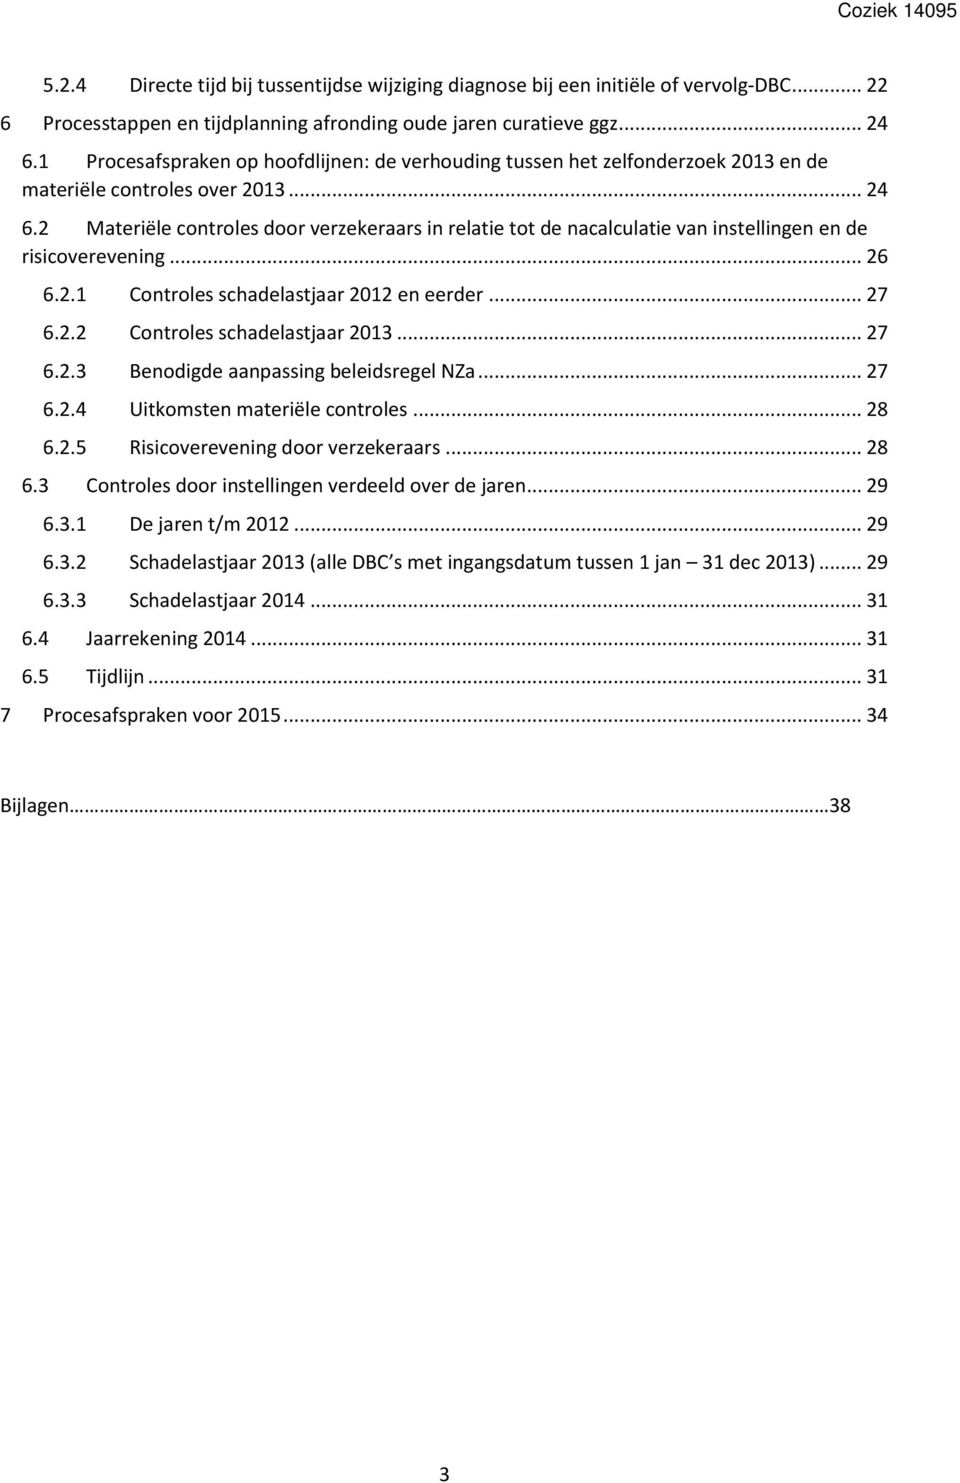 2 Materiële controles door verzekeraars in relatie tot de nacalculatie van instellingen en de risicoverevening... 26 6.2.1 Controles schadelastjaar 2012 en eerder... 27 6.2.2 Controles schadelastjaar 2013.